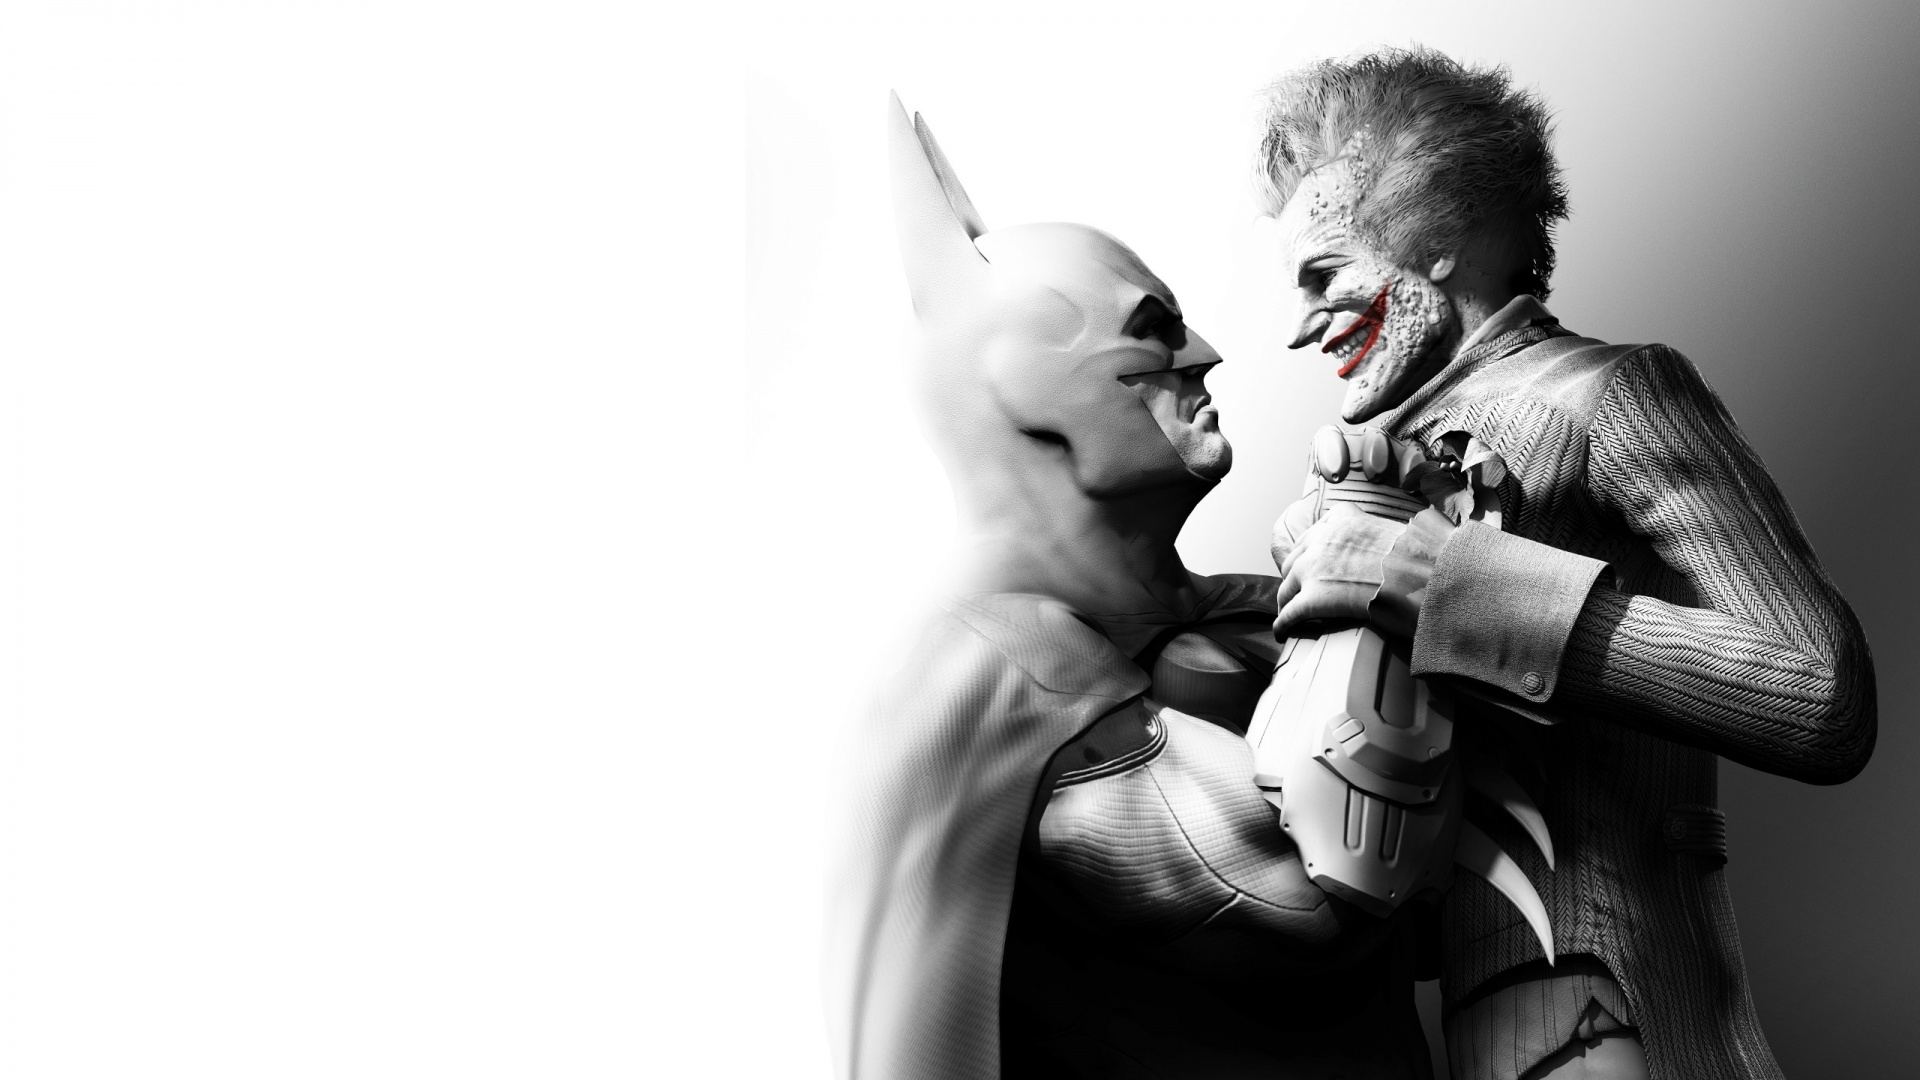 Batman vs joker injustice